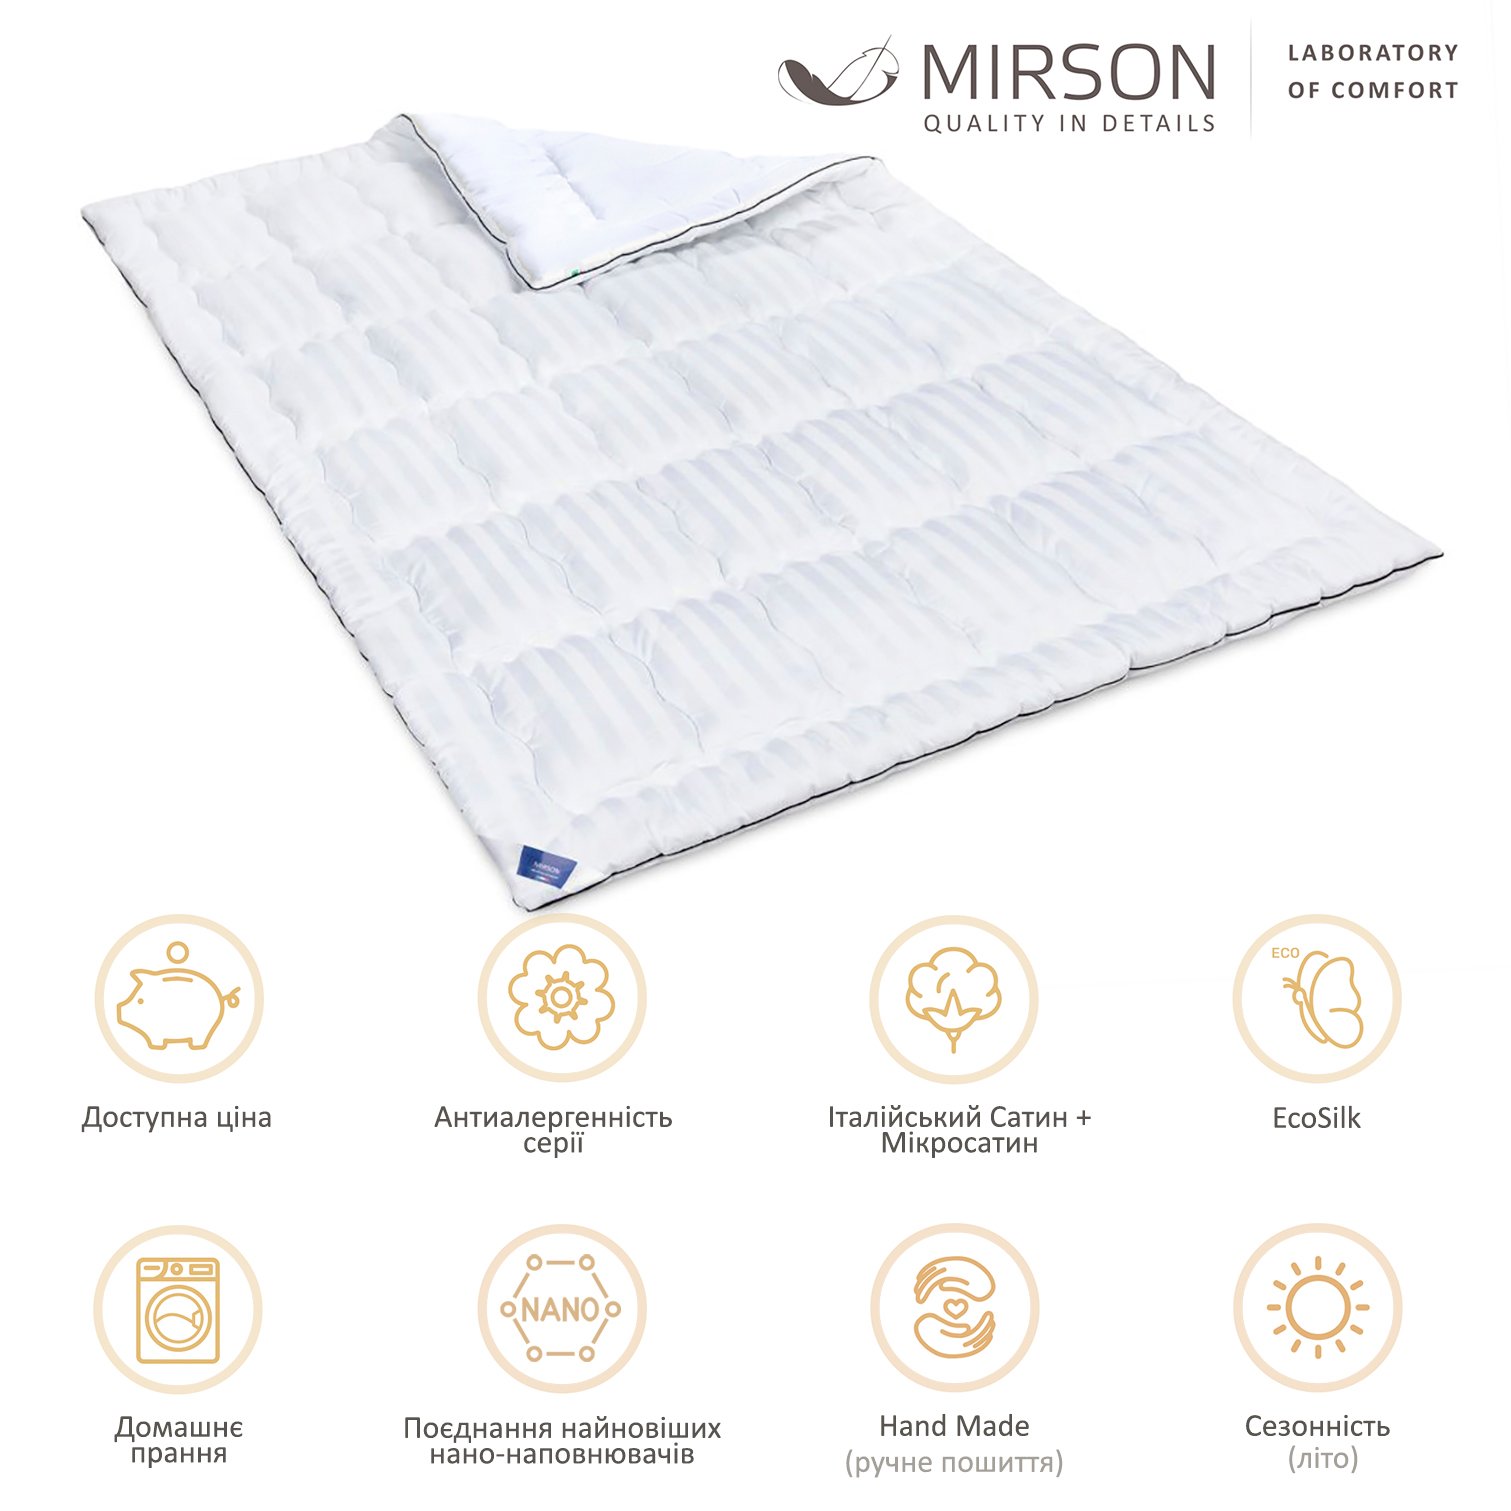 Одеяло антиаллергенное MirSon Royal Pearl Hand Made EcoSilk №1305, летнее, 155x215 см, белое (237054007) - фото 5